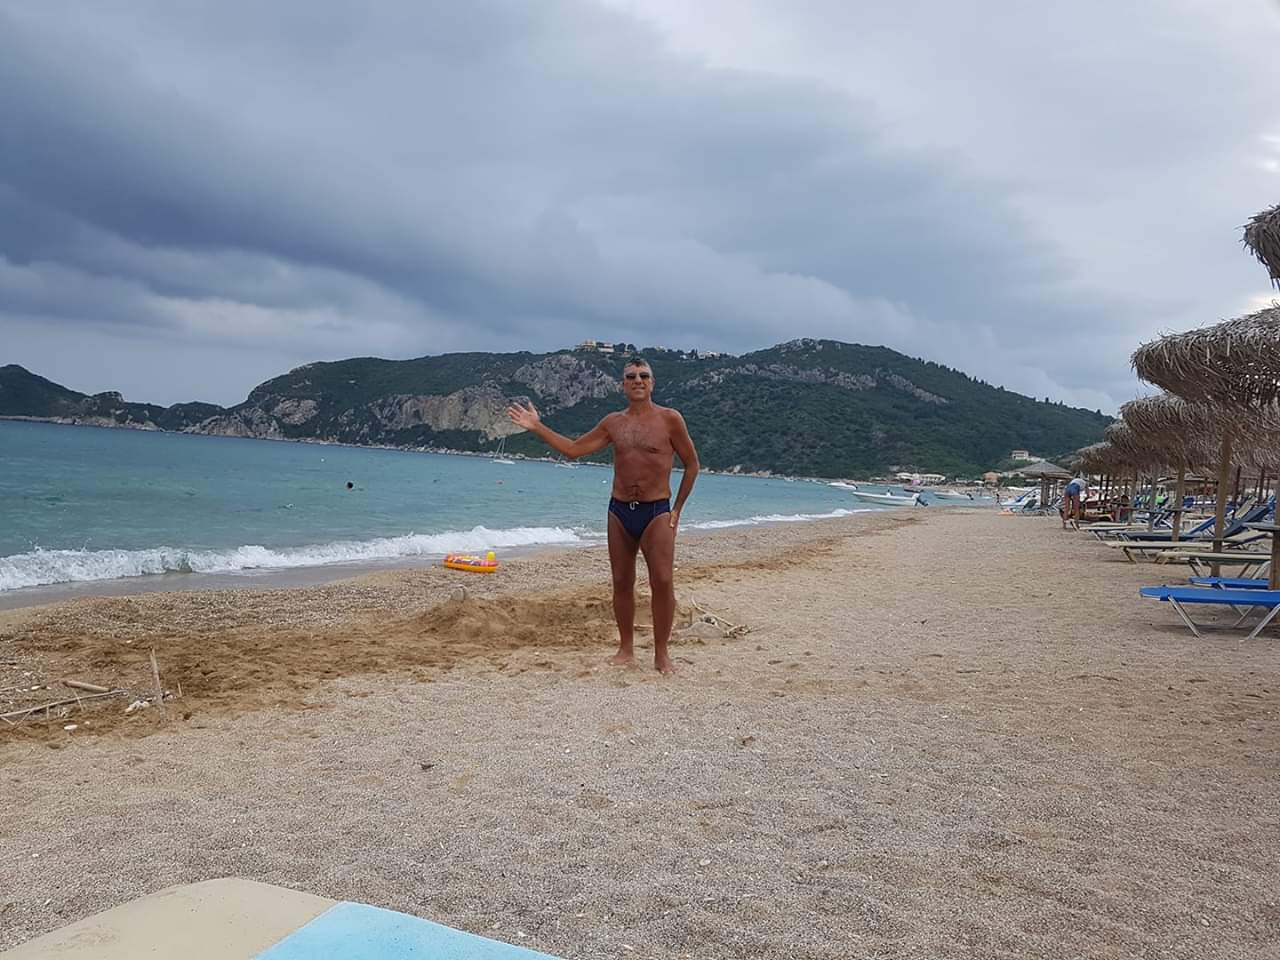 Toni Turi on the beach 2018